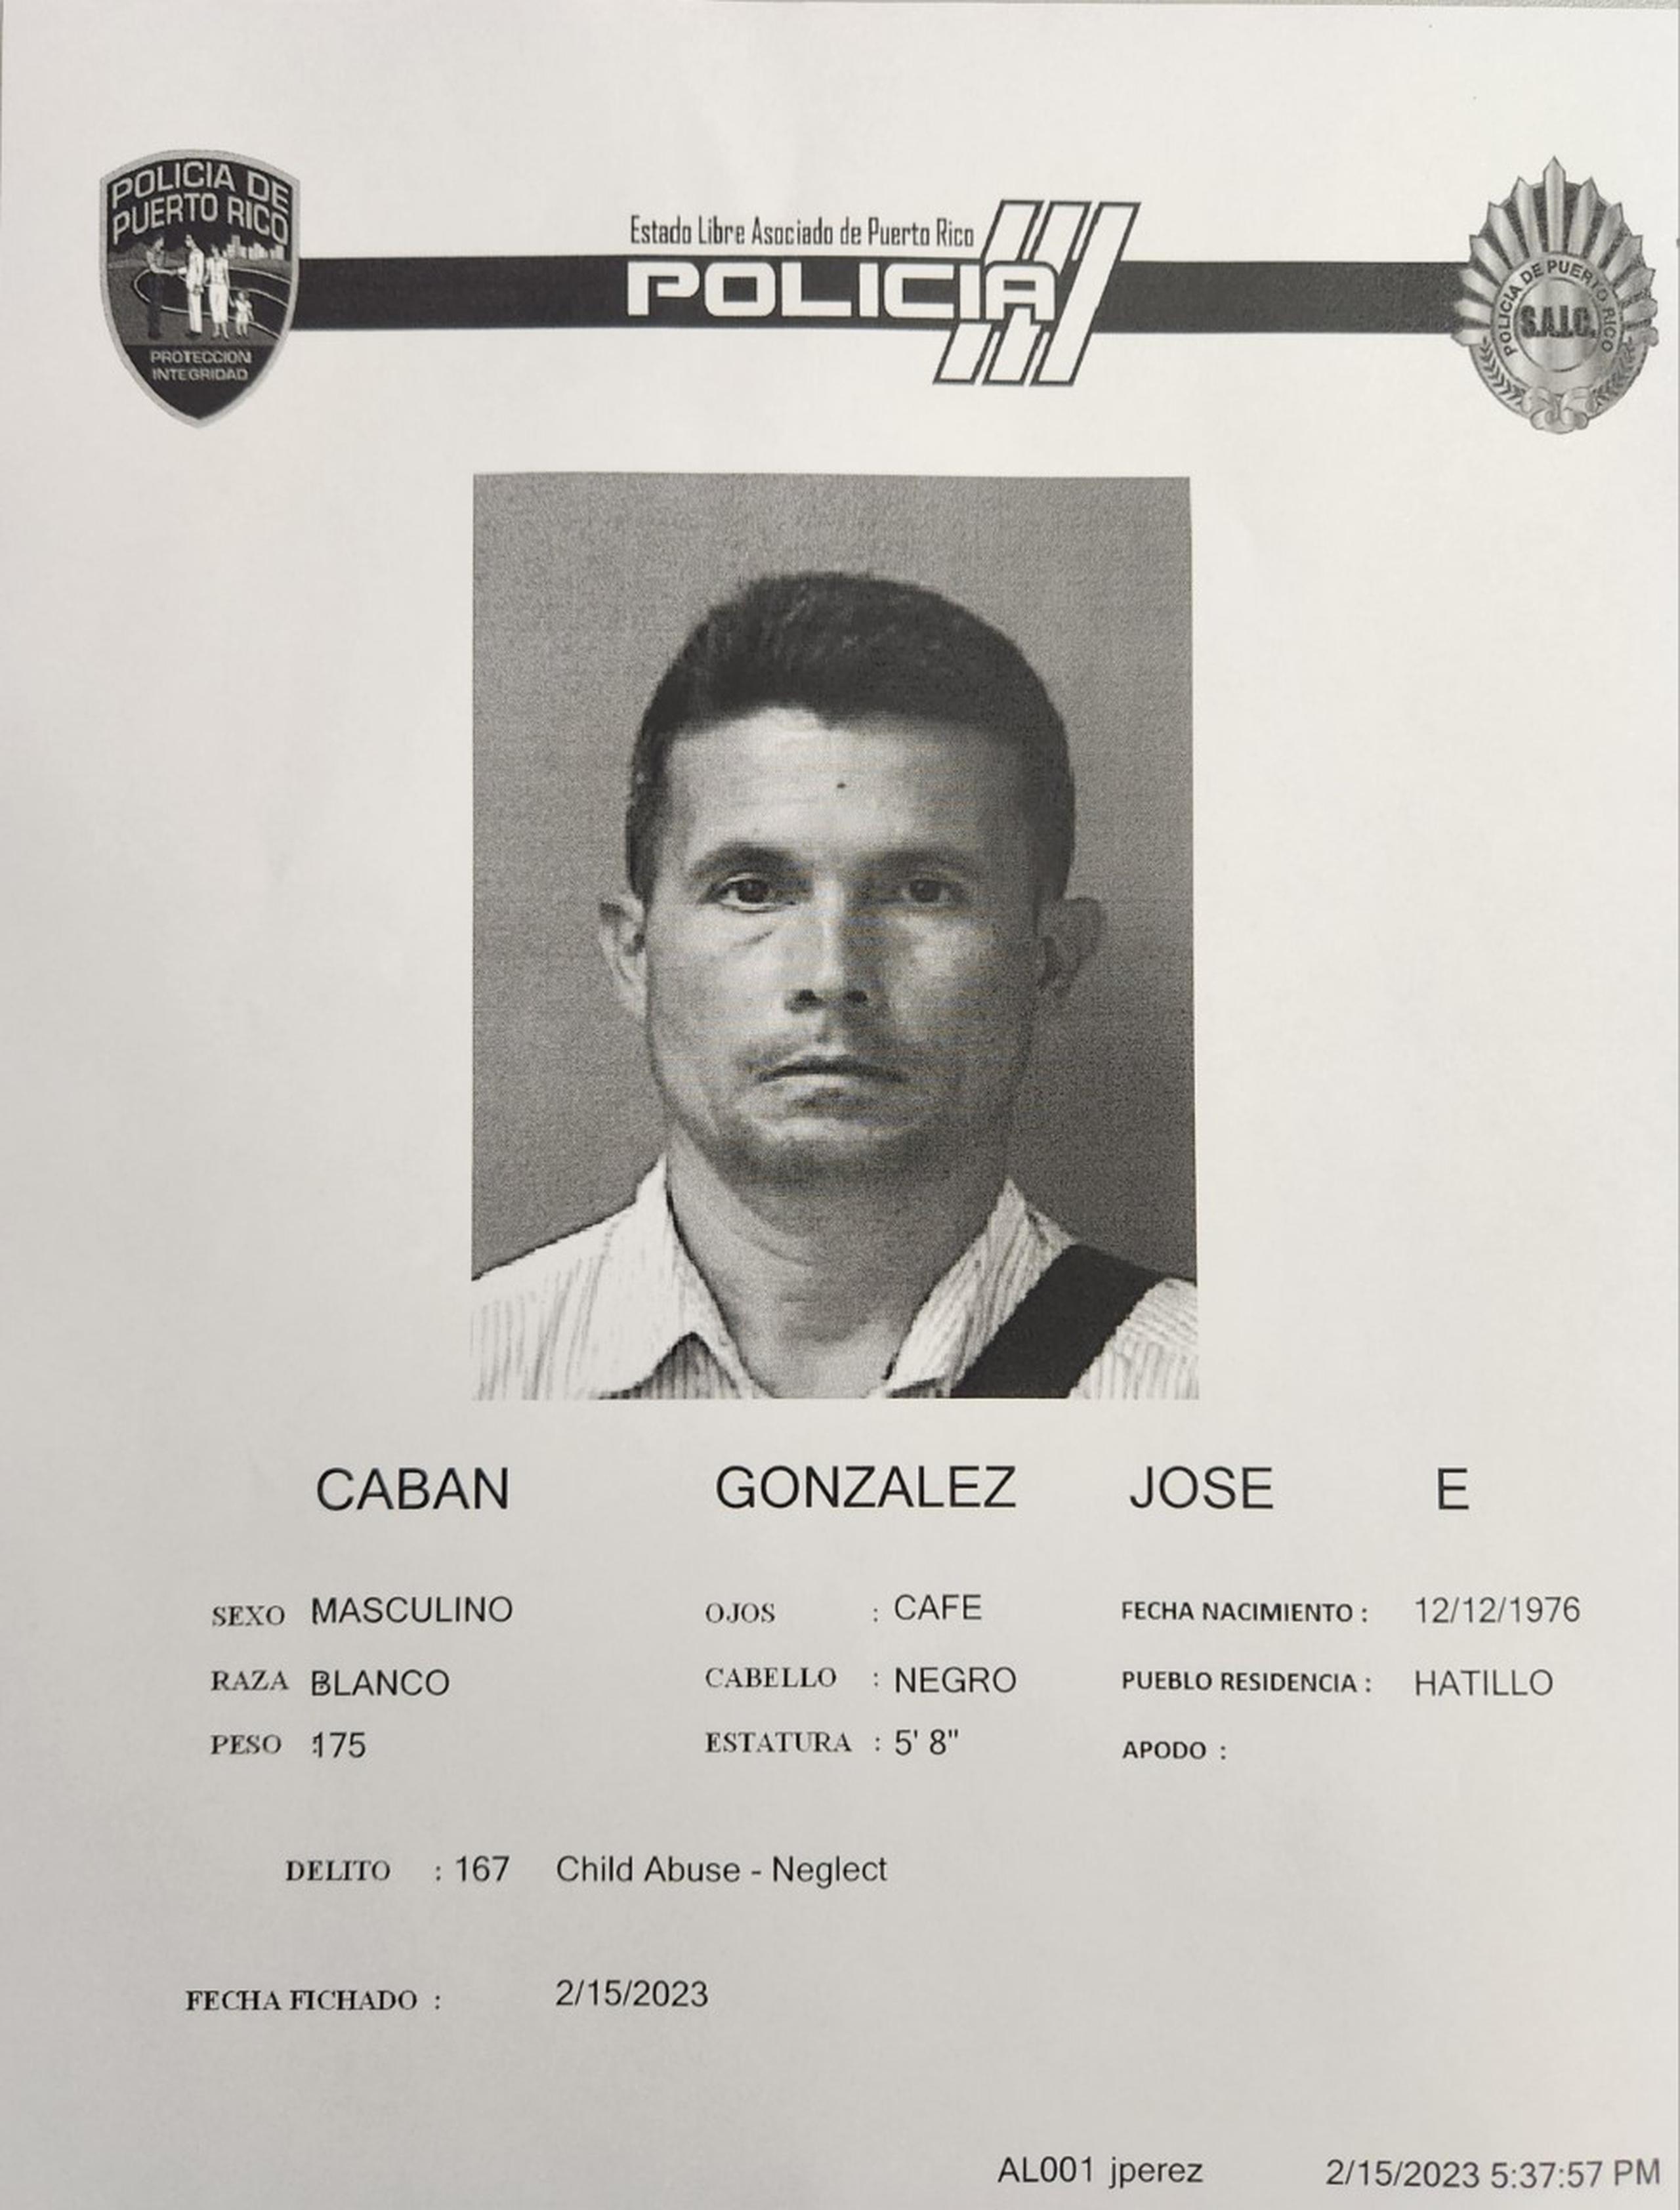 Jose E. Cabán González, maestro acusado de maltrato